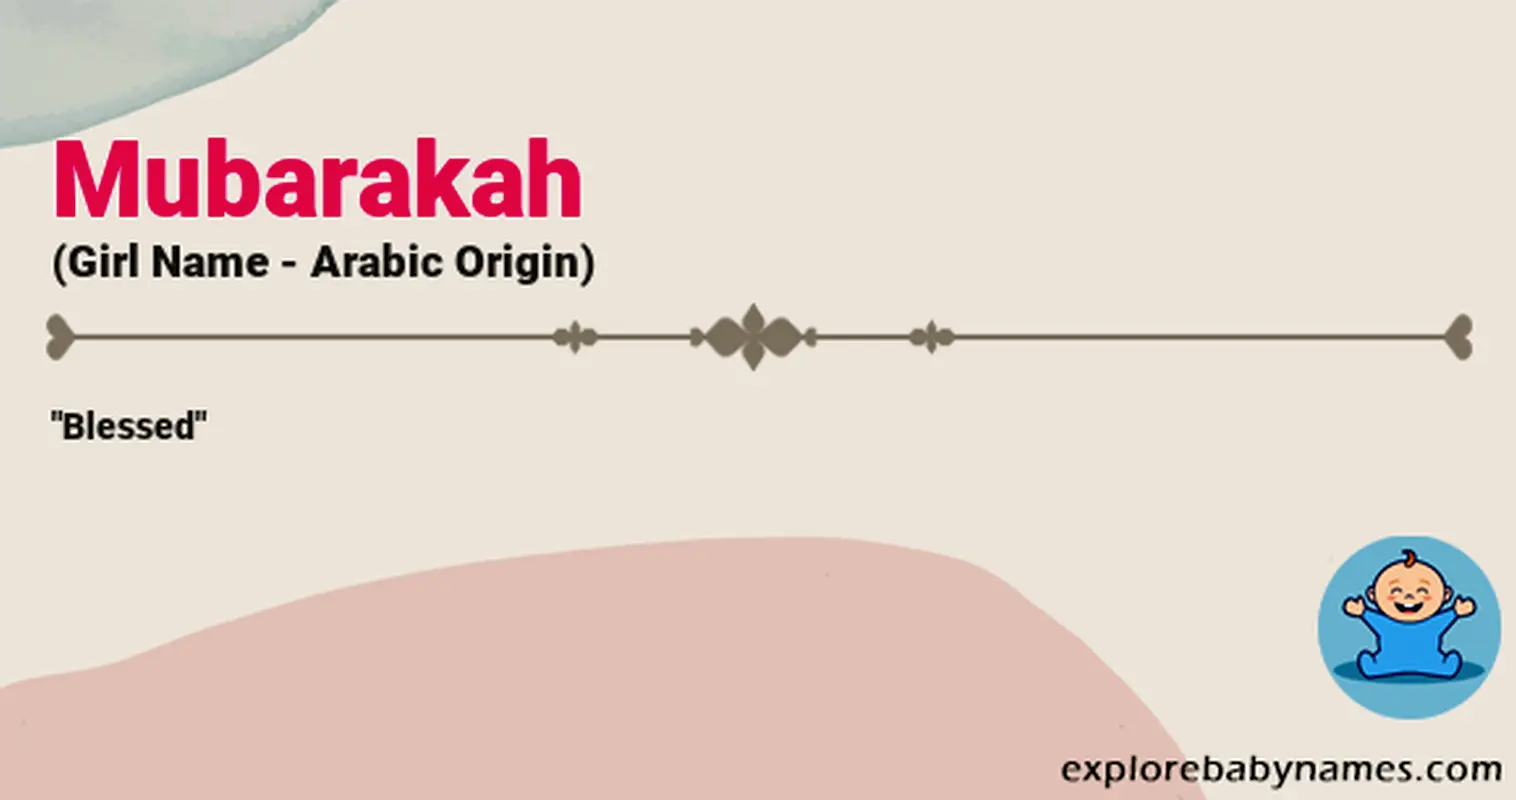 Meaning of Mubarakah